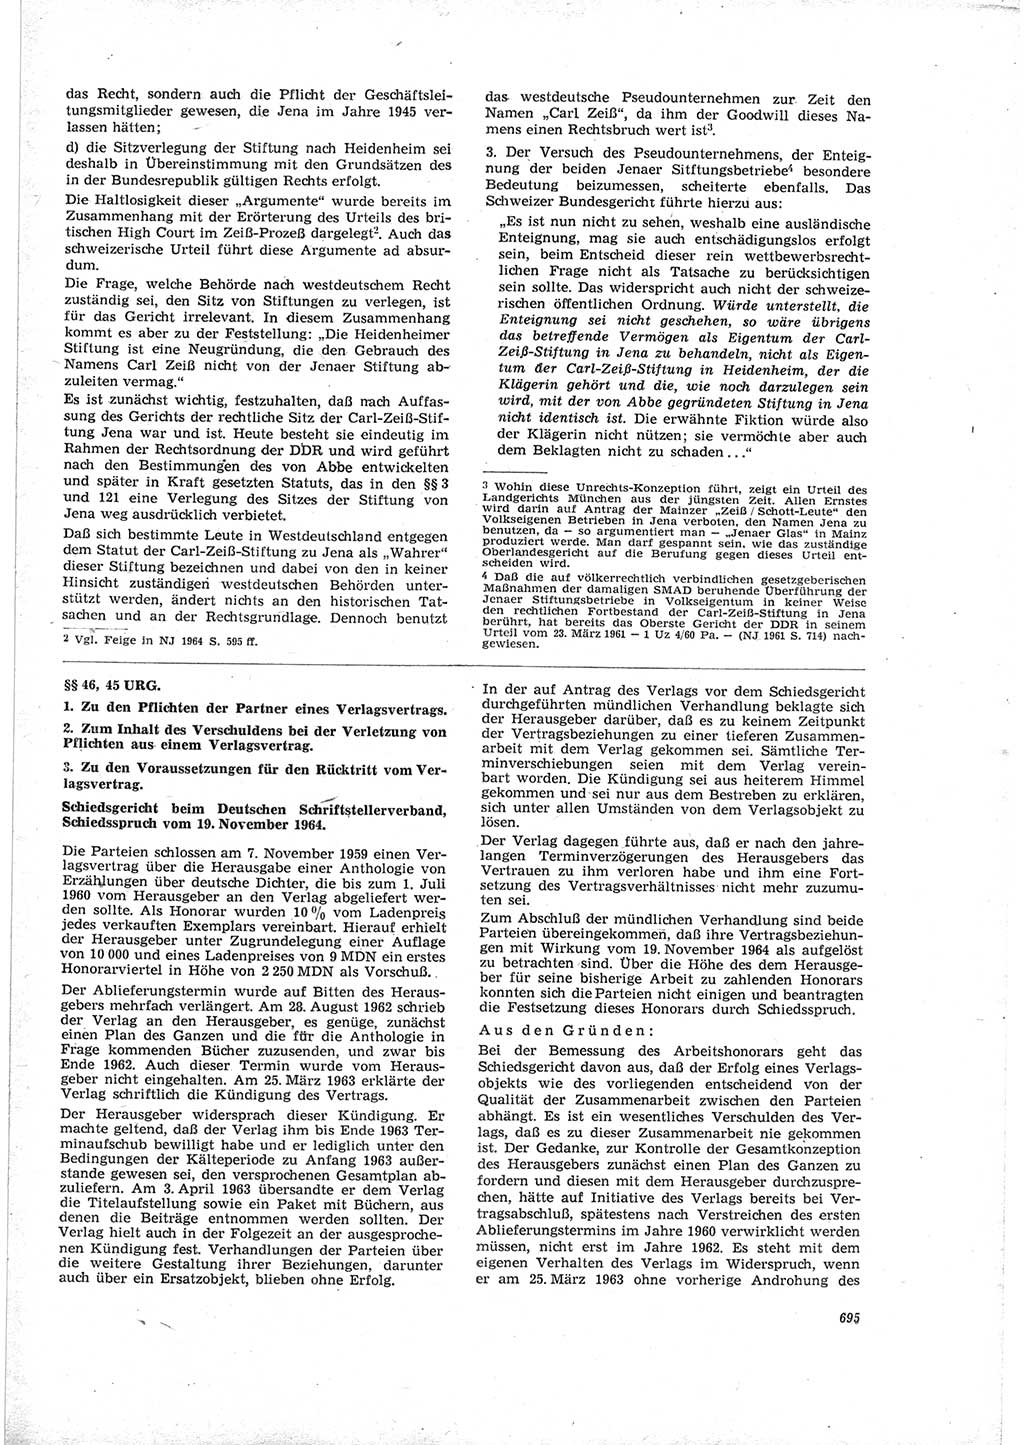 Neue Justiz (NJ), Zeitschrift für Recht und Rechtswissenschaft [Deutsche Demokratische Republik (DDR)], 19. Jahrgang 1965, Seite 695 (NJ DDR 1965, S. 695)